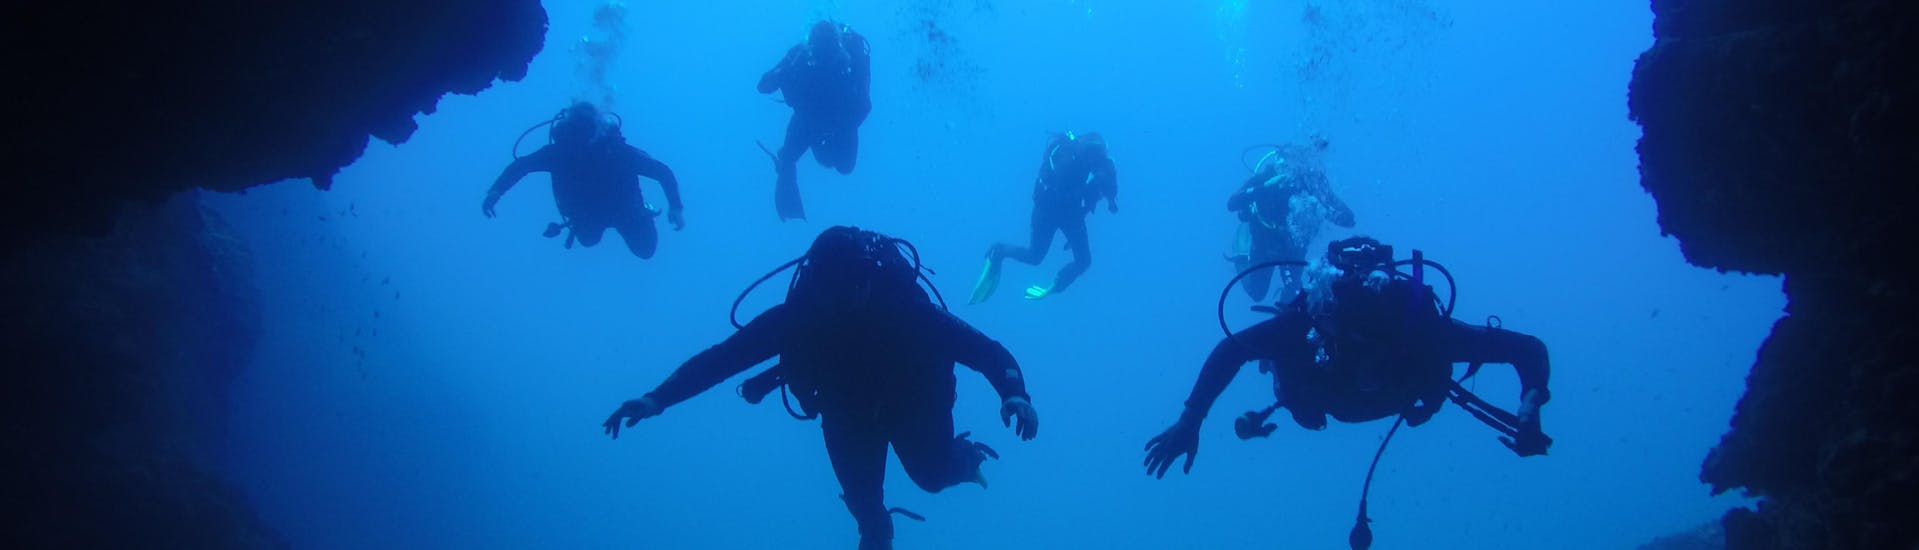 Corso di immersione (PADI) a Dubrovnik per principianti con Diving Center Blue Planet Dubrovnik.